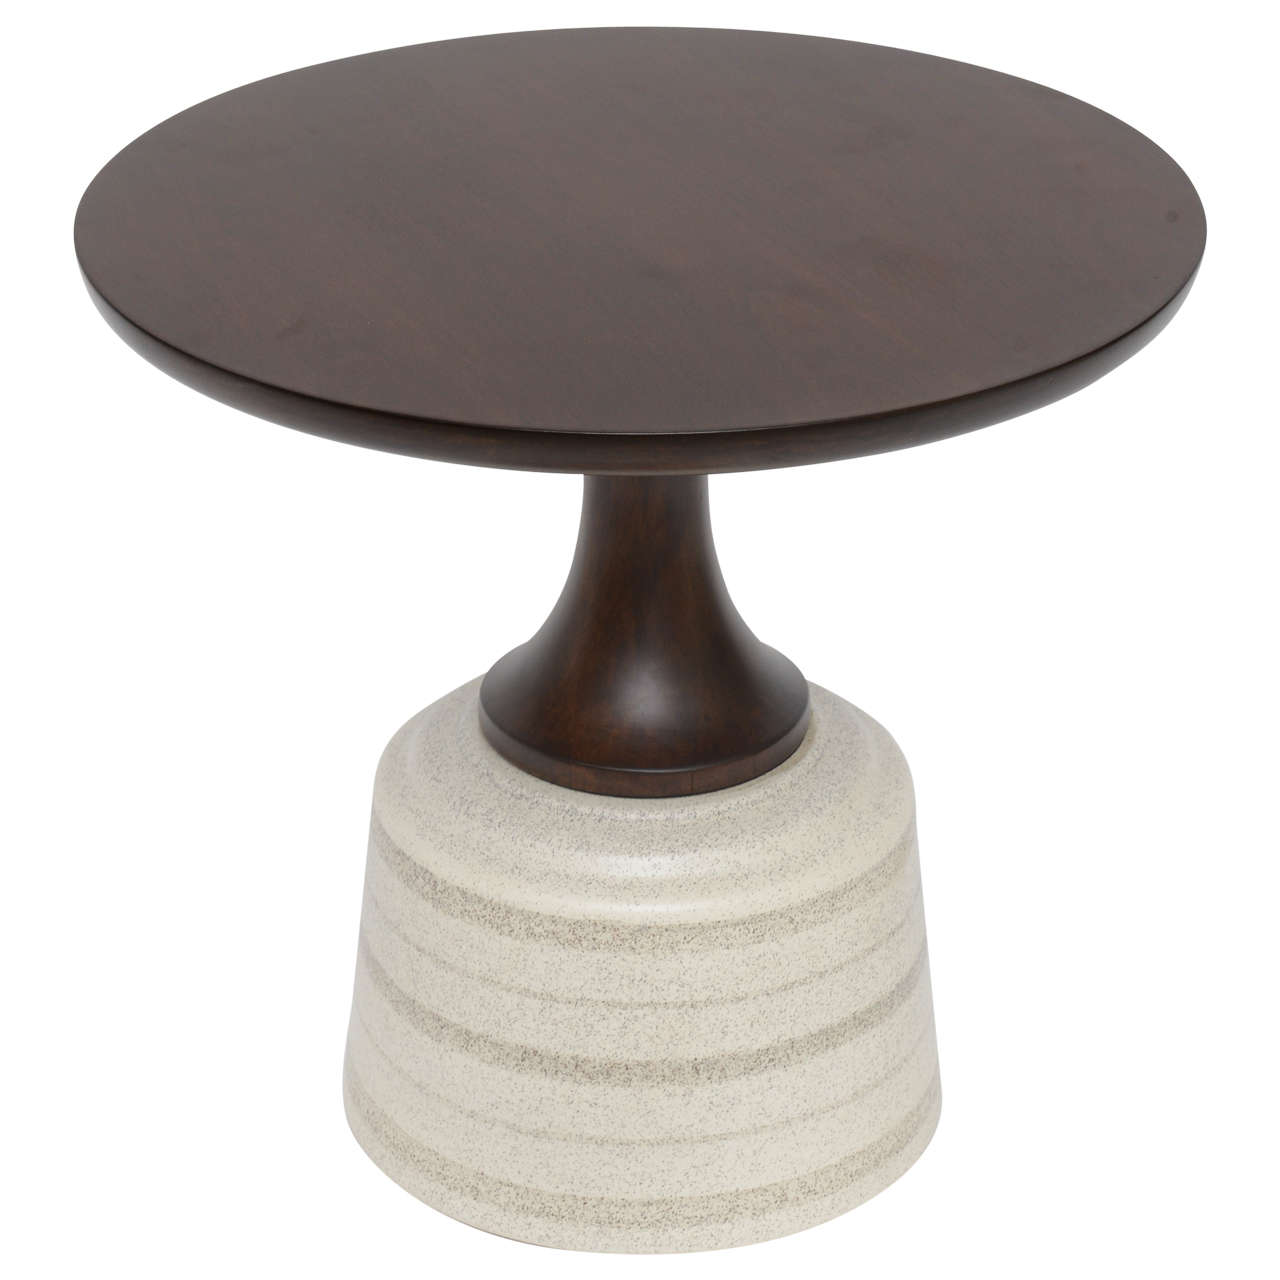 Ceramic-Based Walnut Side Table by John Van Koert for Drexel